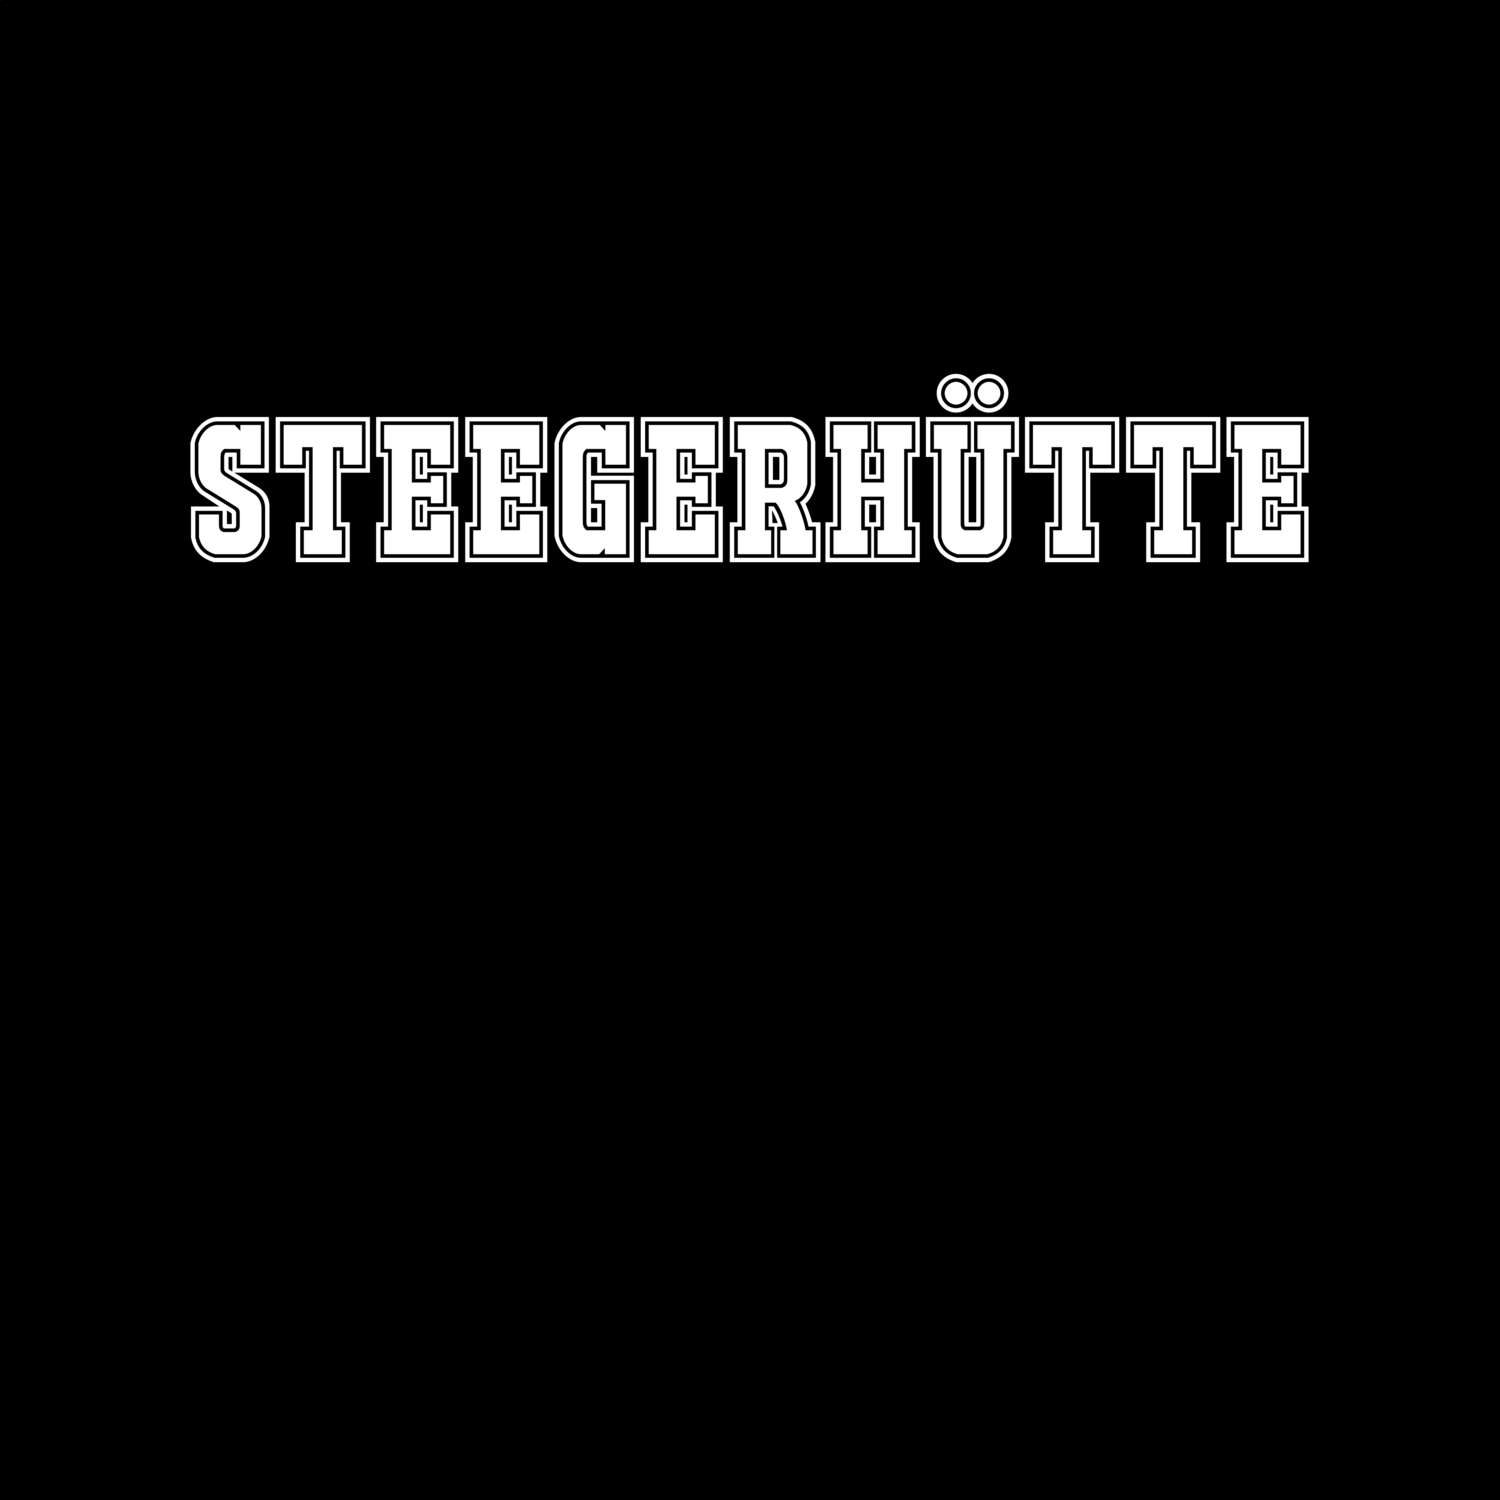 Steegerhütte T-Shirt »Classic«